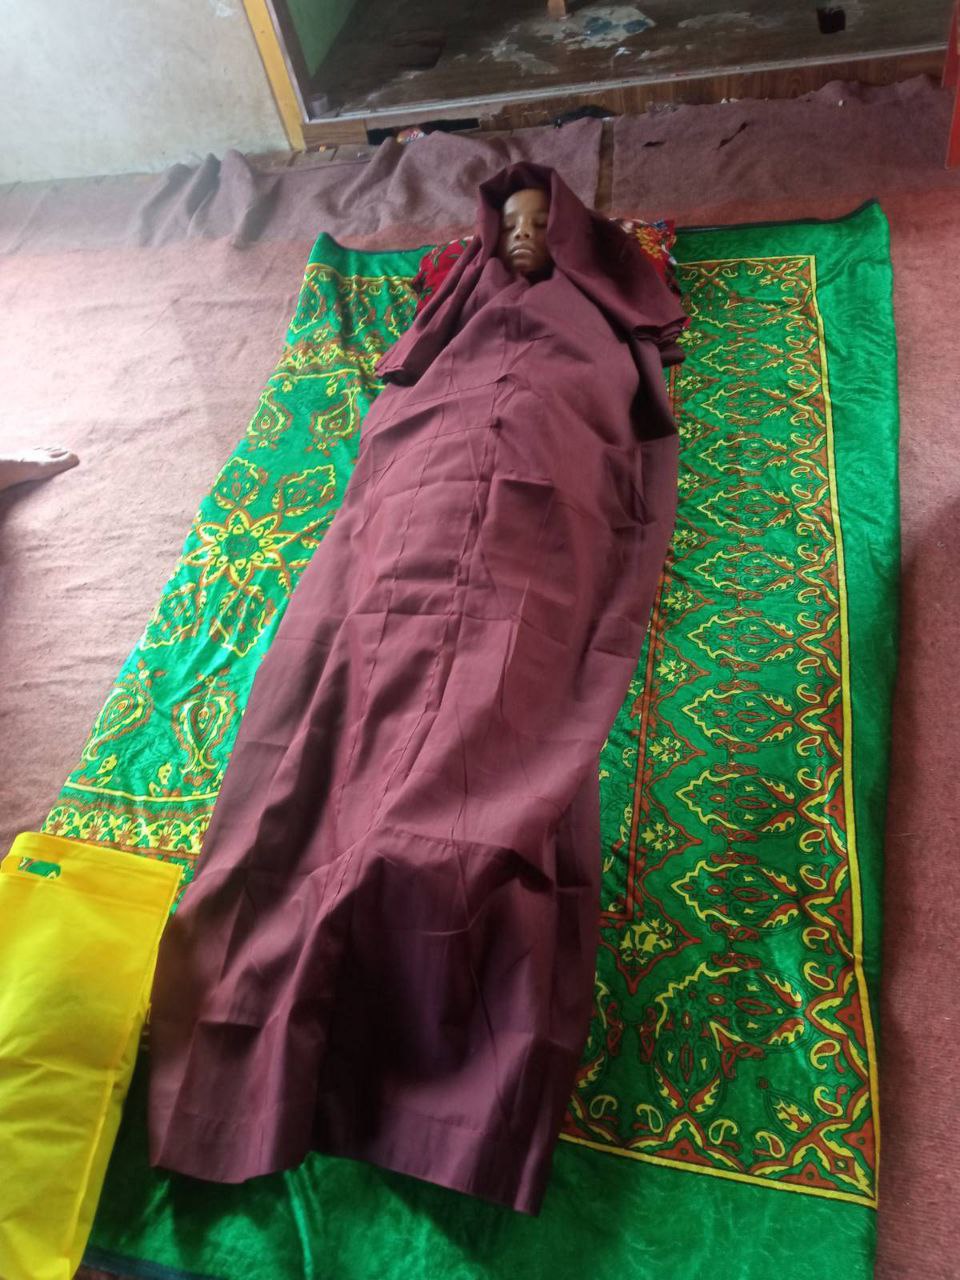 ဟဲဟိုးမြို့ ကံတလိဘုန်းတော်ကြီးကျောင်းတွင် ရှင်သာမဏေတစ်ပါးဓာတ်လိုက် သေဆုံးမှုဖြစ်ပွား